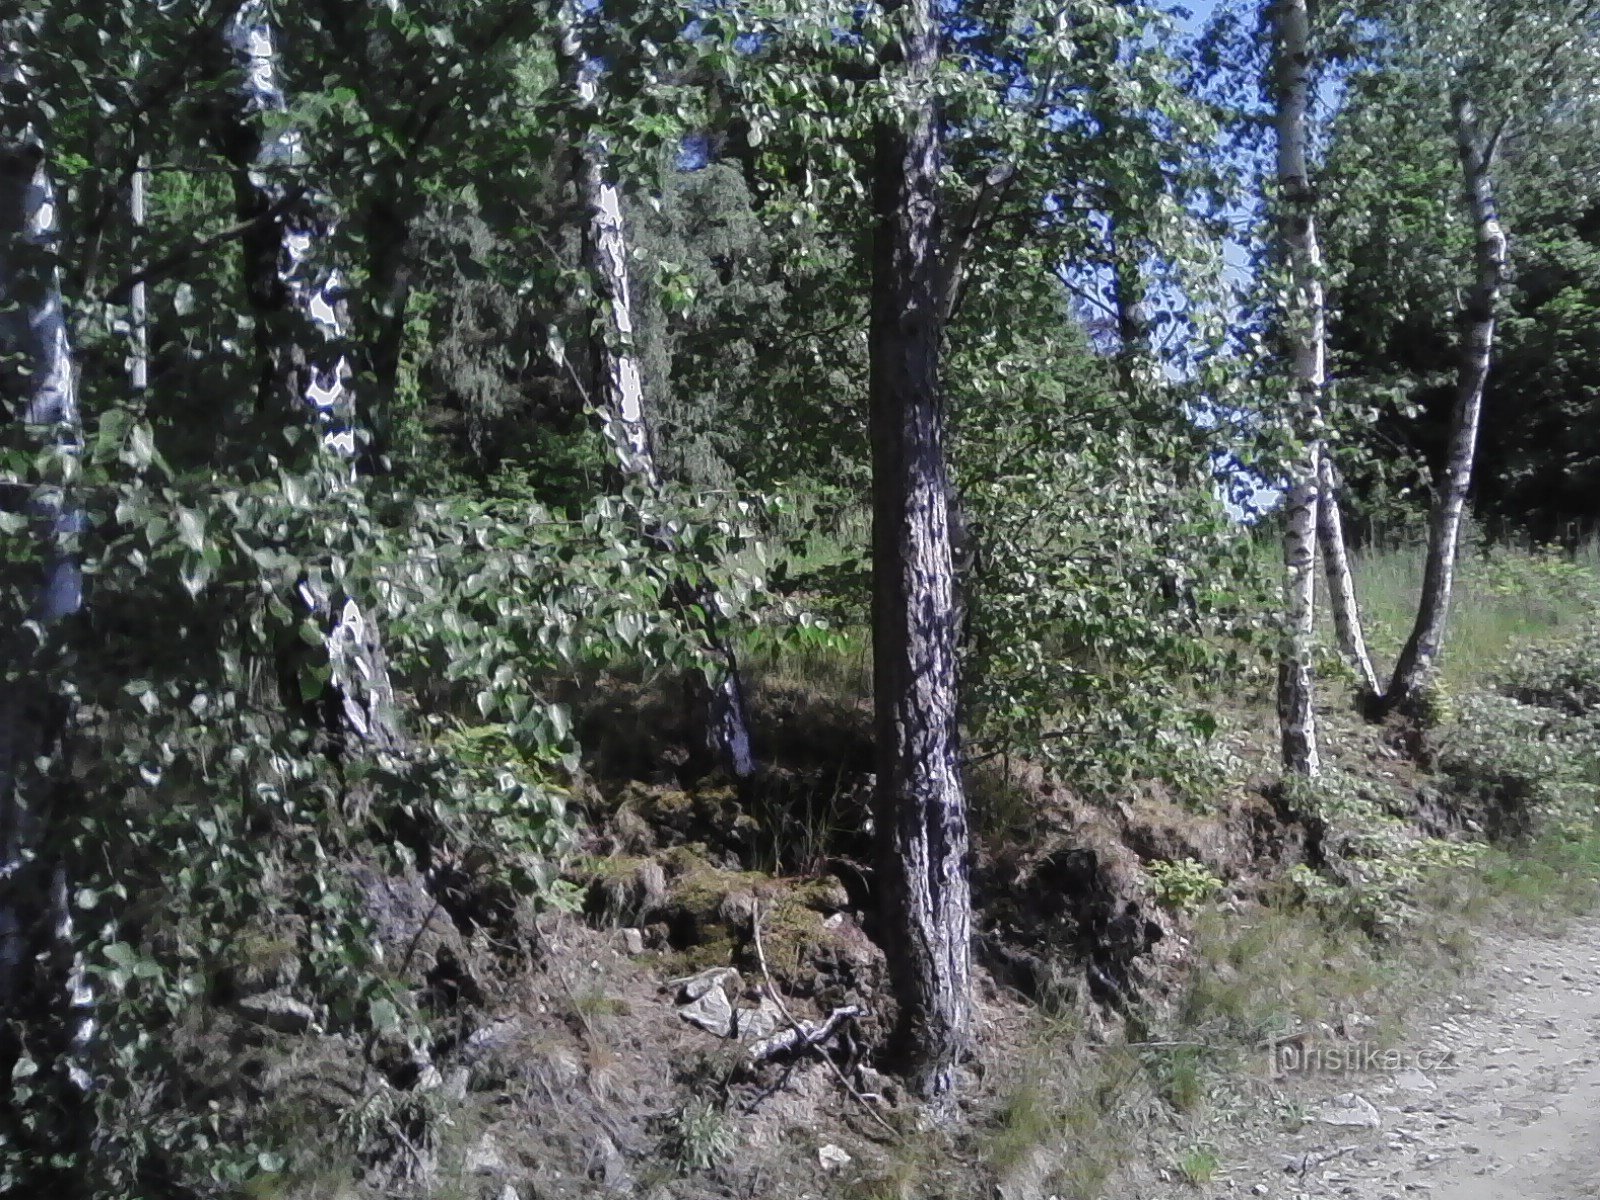 2. Već se penjem u brda do Javorová skála.